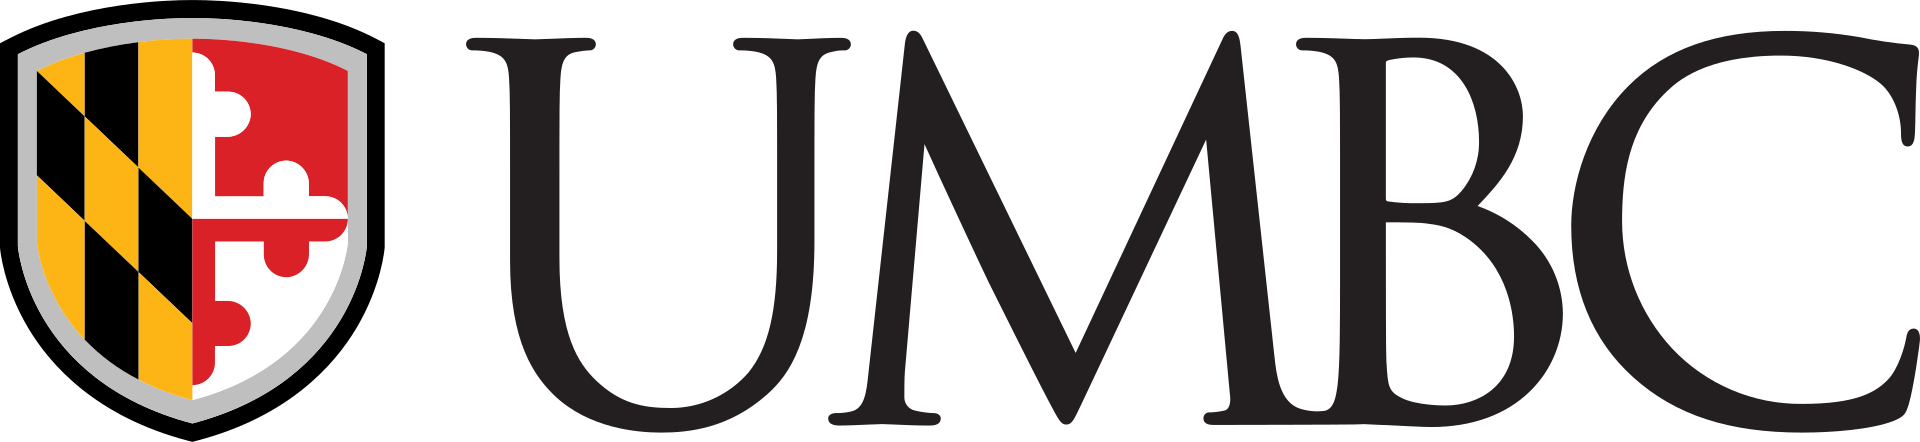 马里兰大学, 巴尔的摩县(UMBC)标志, 马里兰大学, 巴尔的摩县- http://styleguide.umbc.edu/logos/，公共领域，http://commons.维基.org/w/index.php?curid = 67684930 "